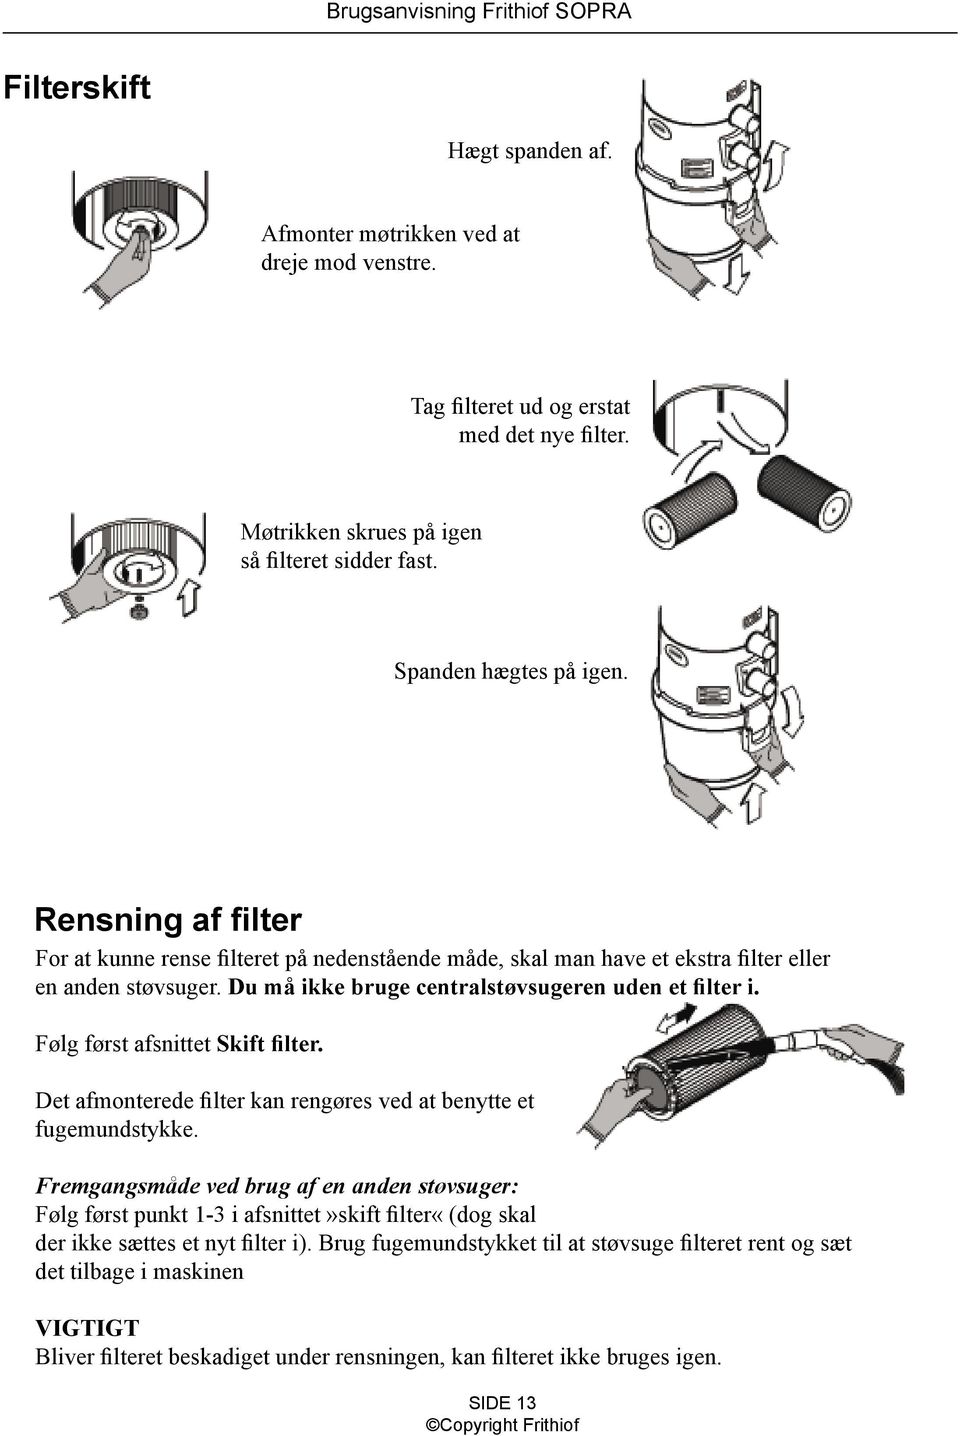 Følg først afsnittet Skift filter. Det afmonterede filter kan rengøres ved at benytte et fugemundstykke.